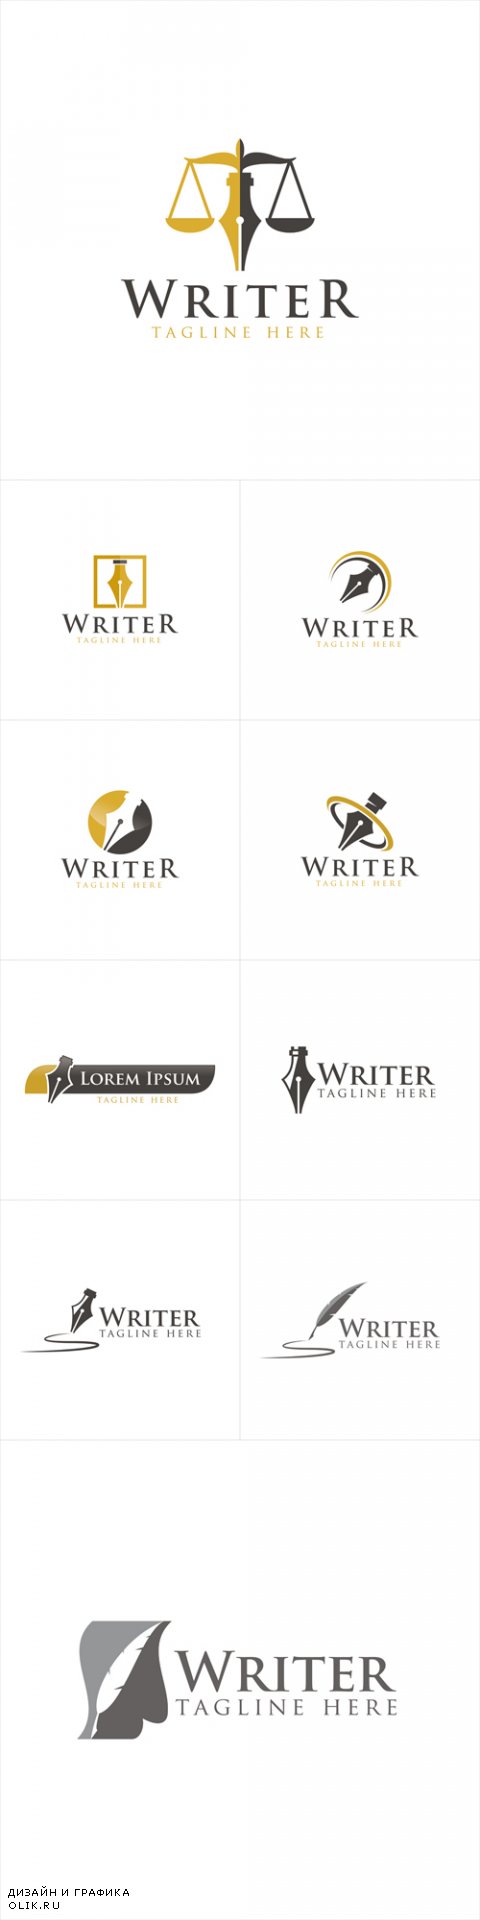 Vector Writer Logo Creative Design Templates